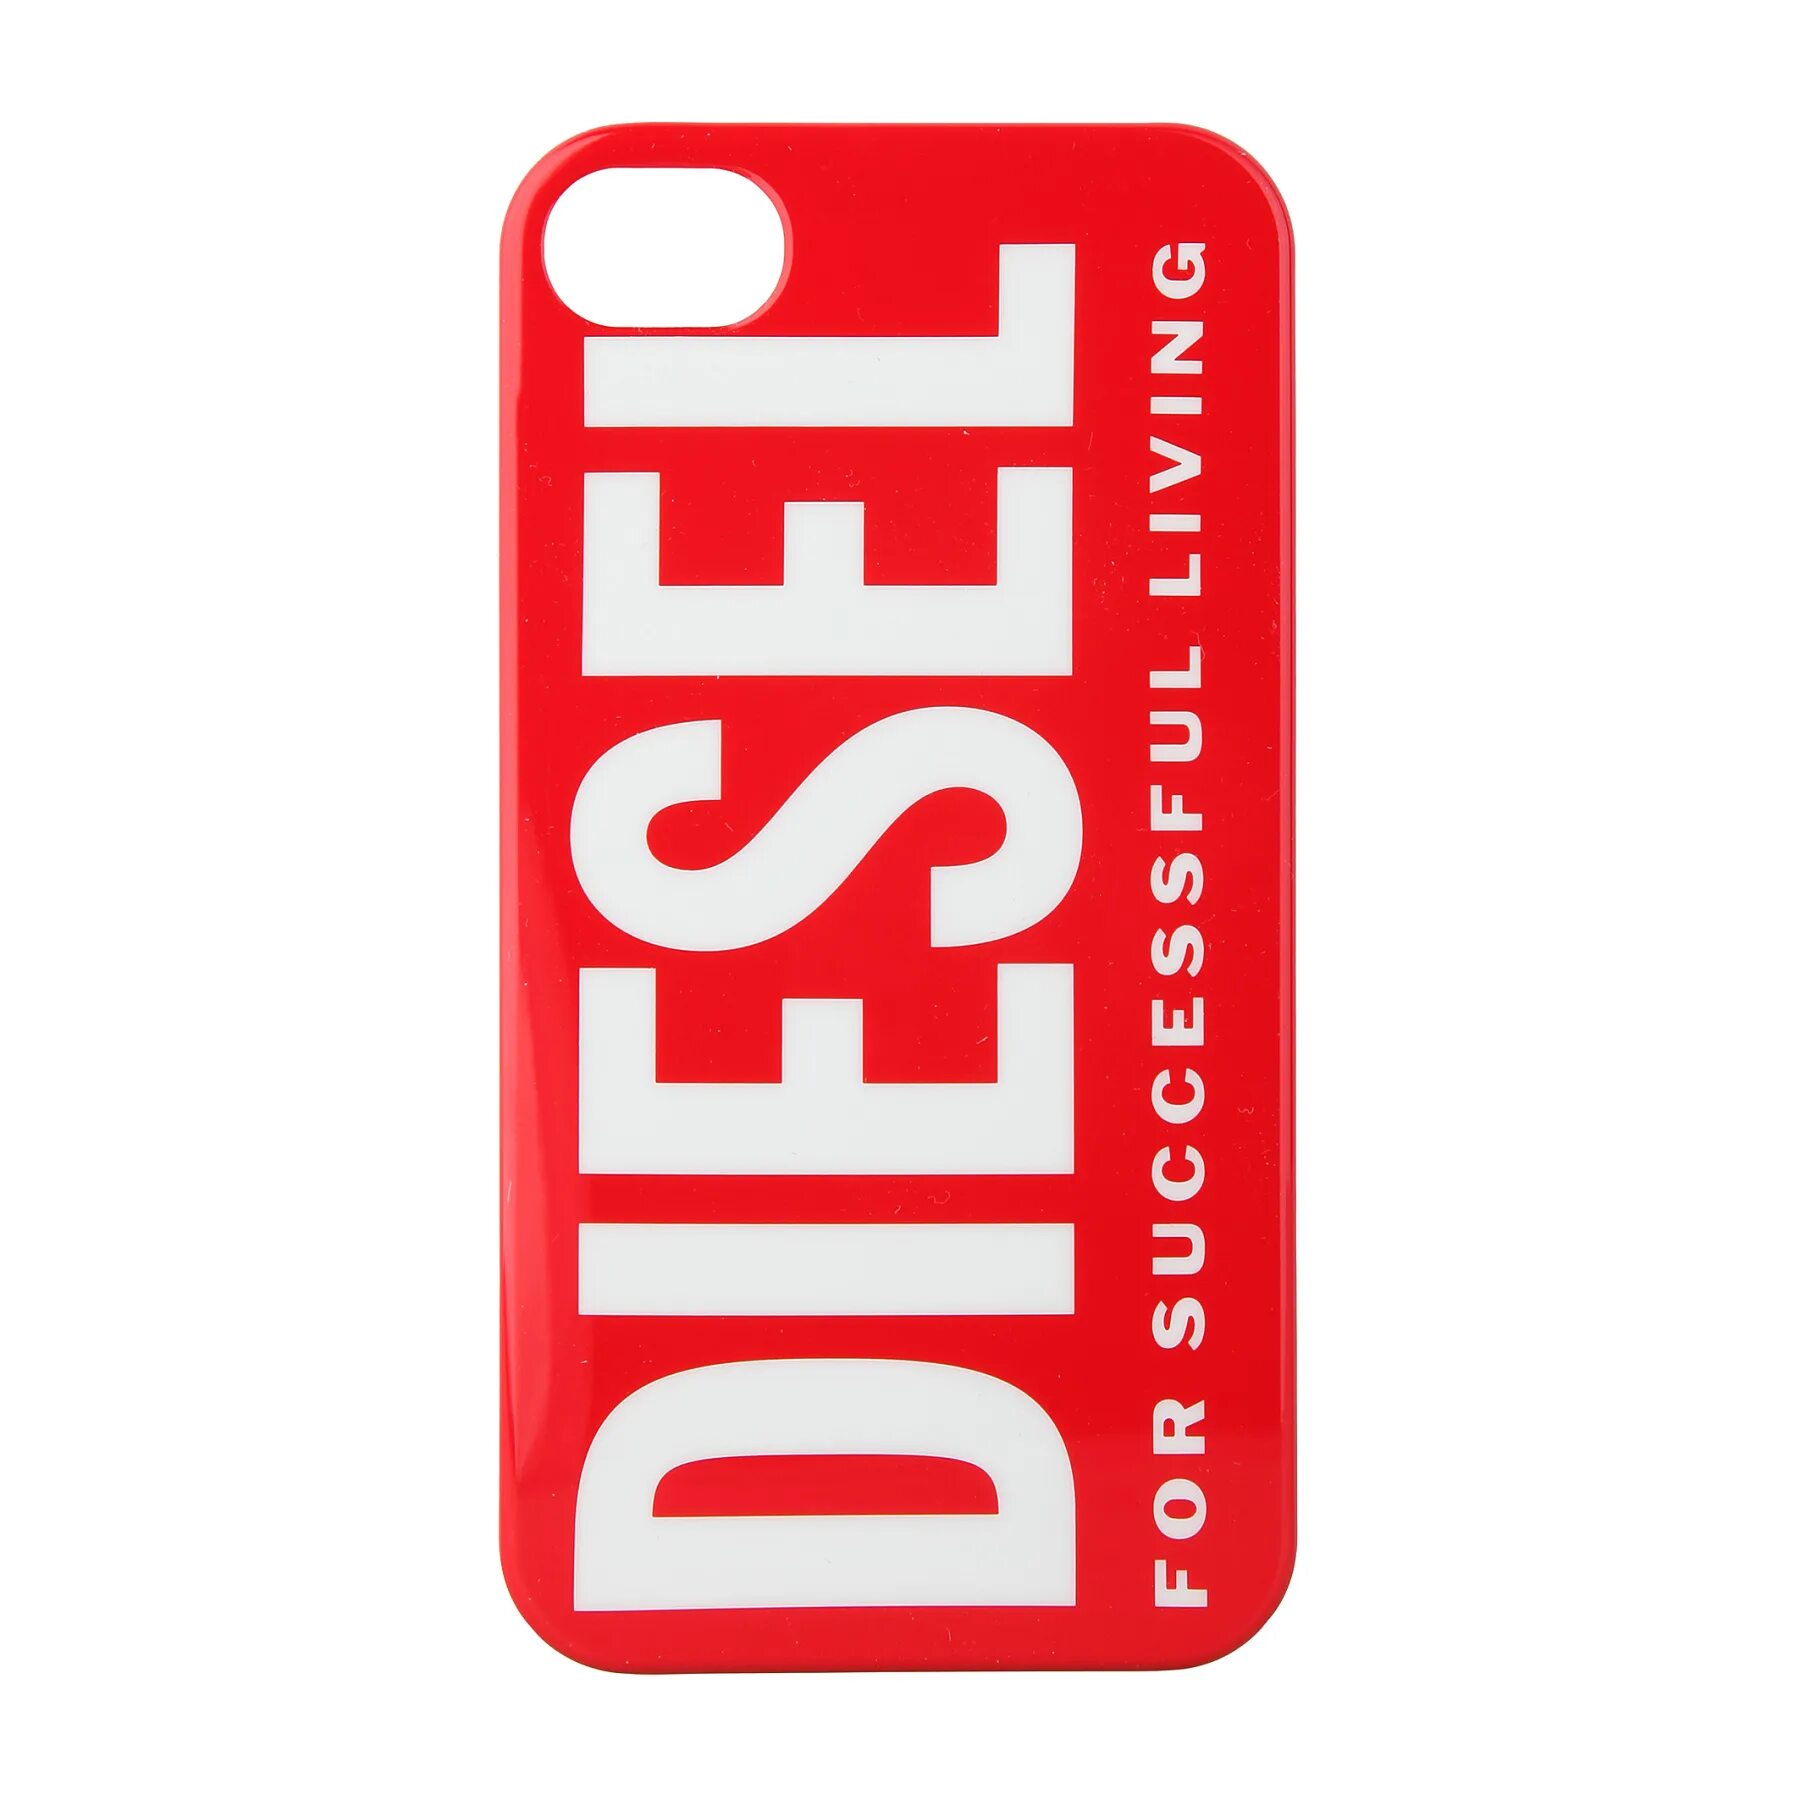 Эмблема дизель. Дизель бренд. Diesel лейбл. Логотип дизель одежда.